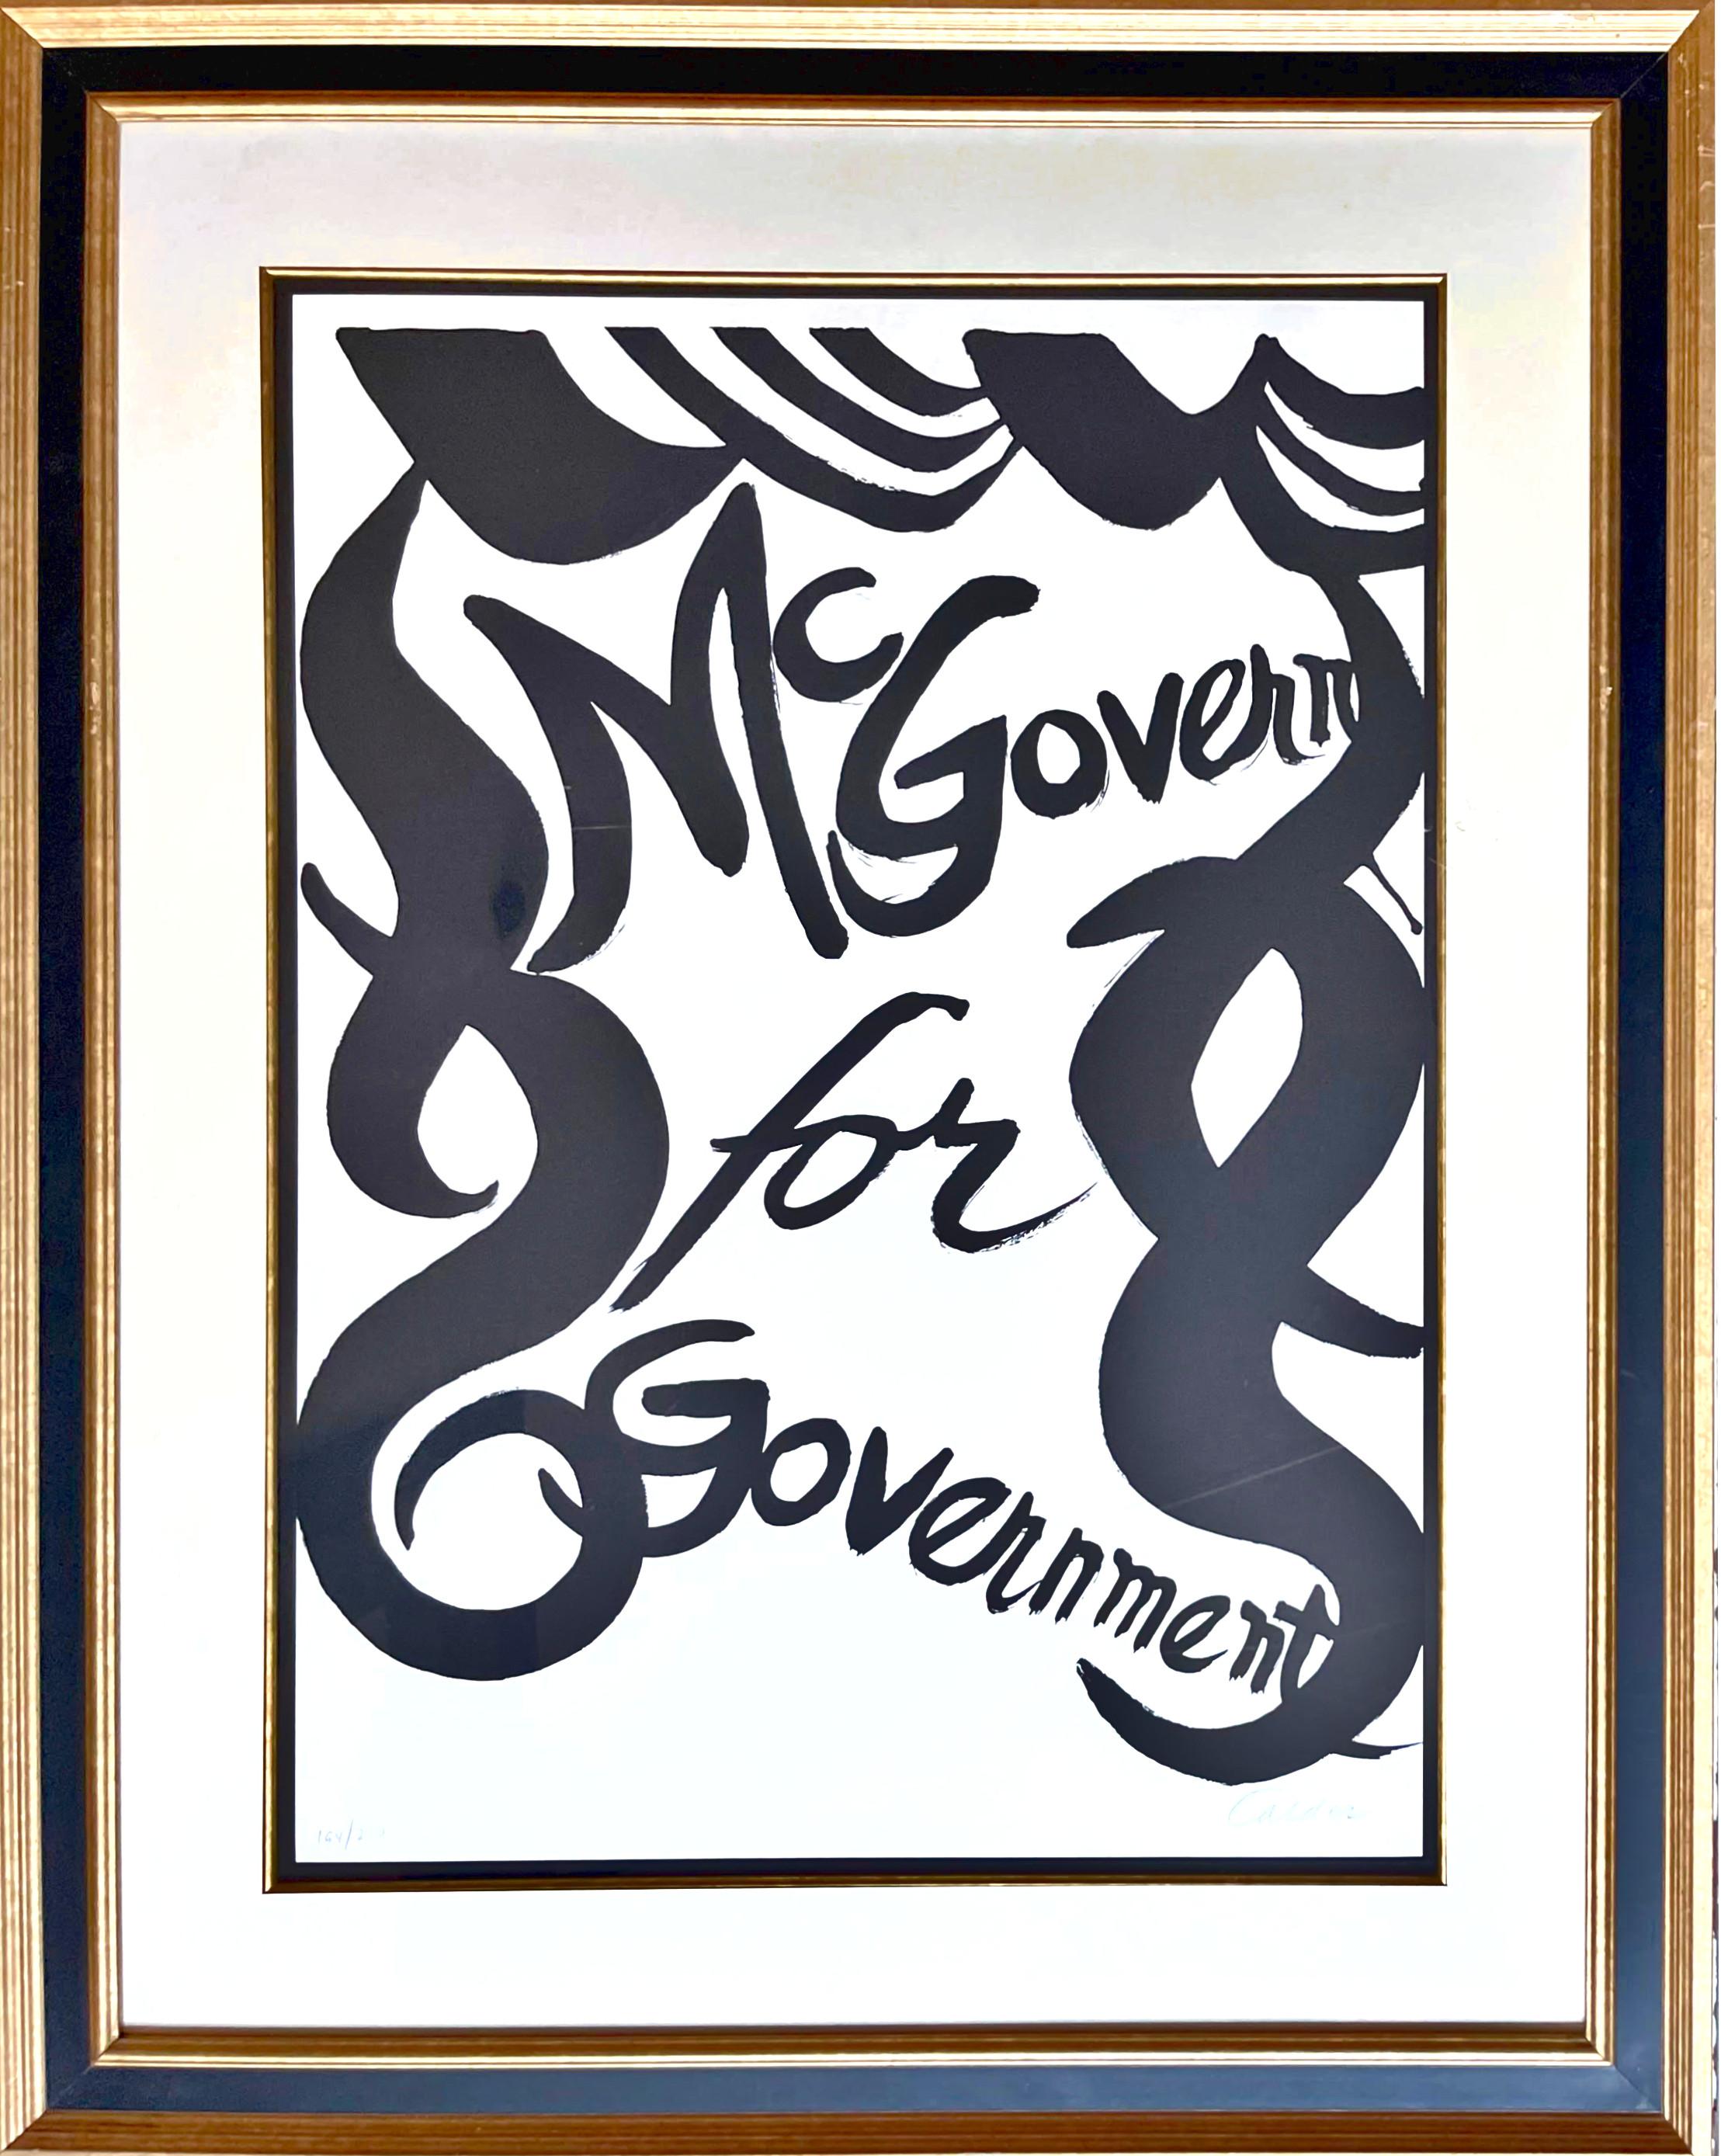 McGovern für McGovernment Bleistift signiert und nummeriert 194/200 politische Lithographie